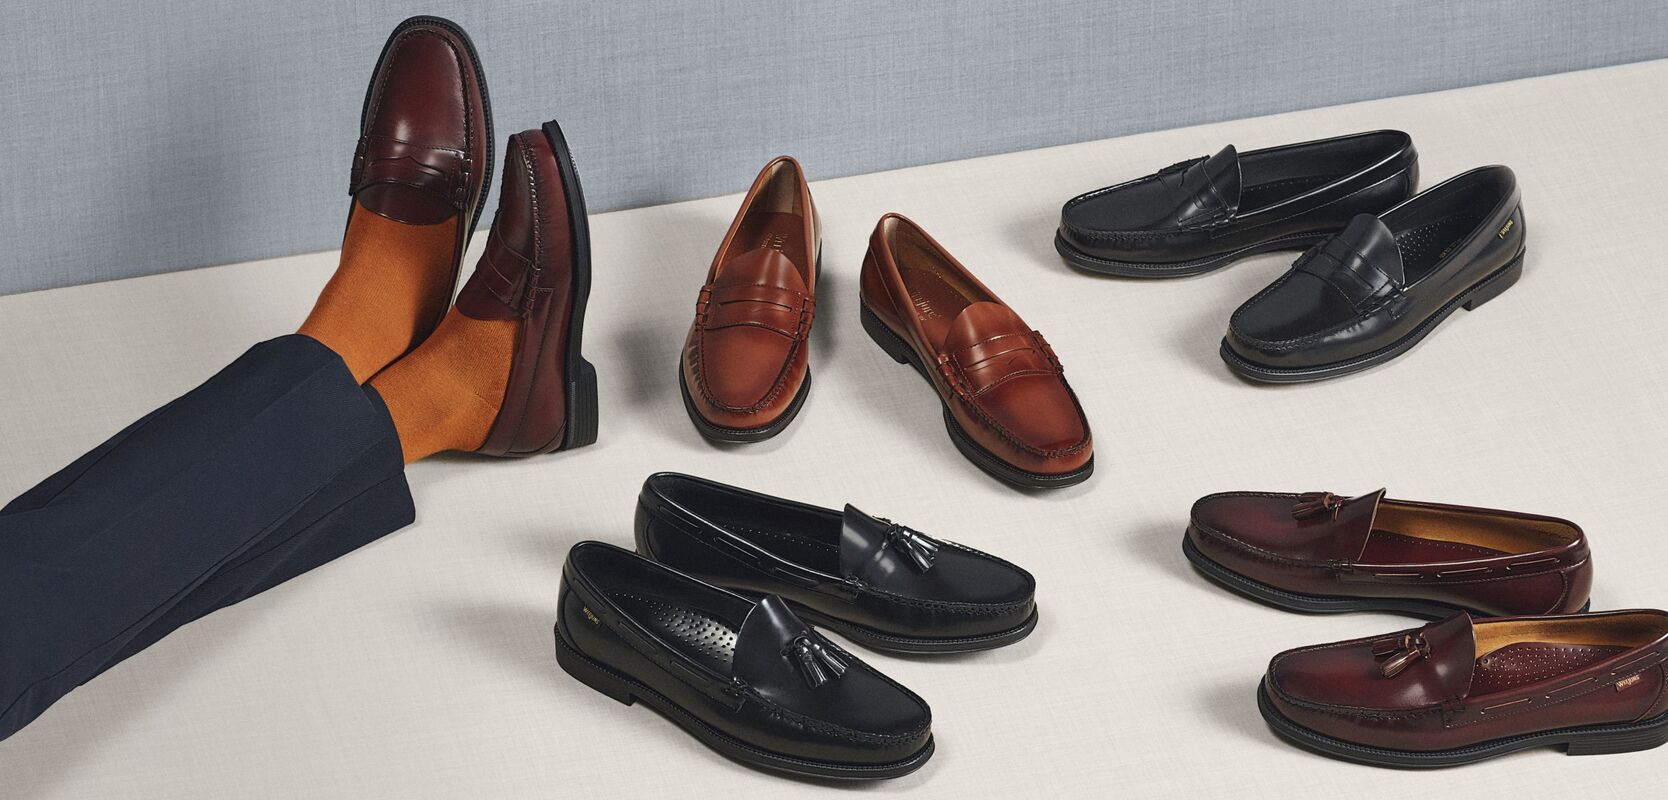 Giày Loafer – Đôi Giày Được Nhiều Quý Ông Yêu Thích Và Ưa Chuộng